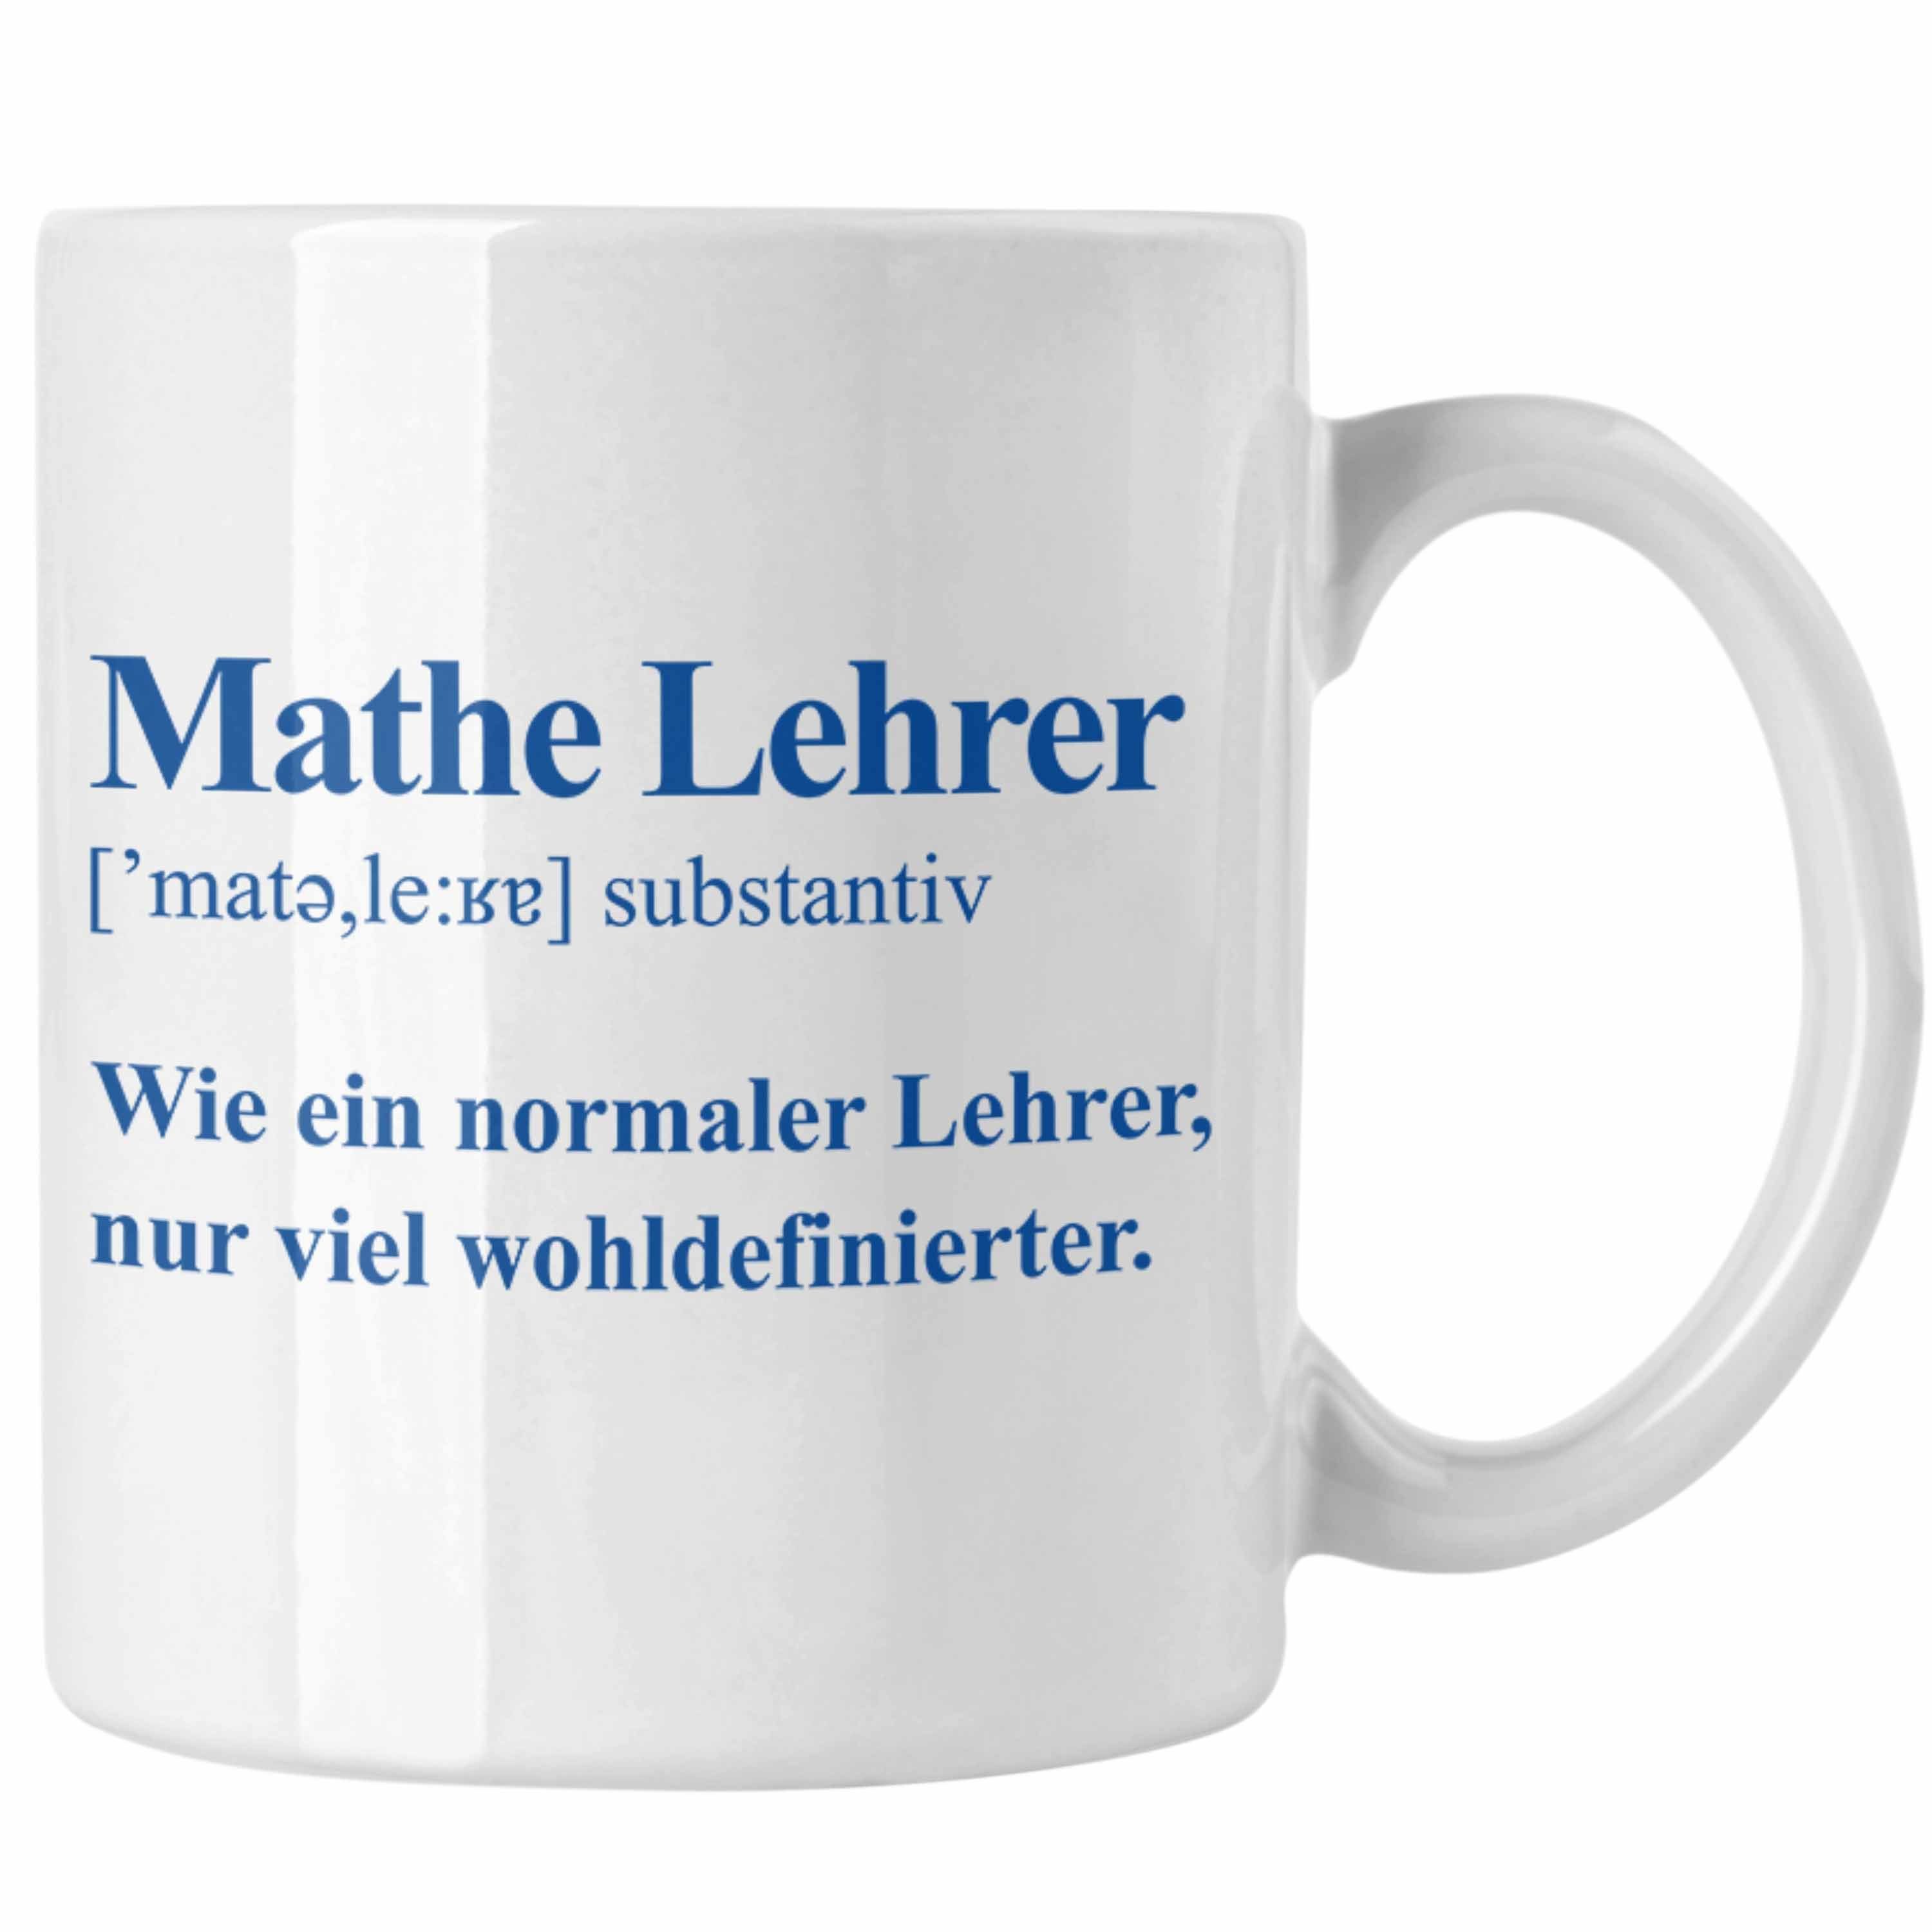 Trendation Tasse Trendation - Mathelehrer Tasse Mathematiker Tassen mit Spruch Lustig Kaffeetasse Geschenk Mathe Lehrer Weiss